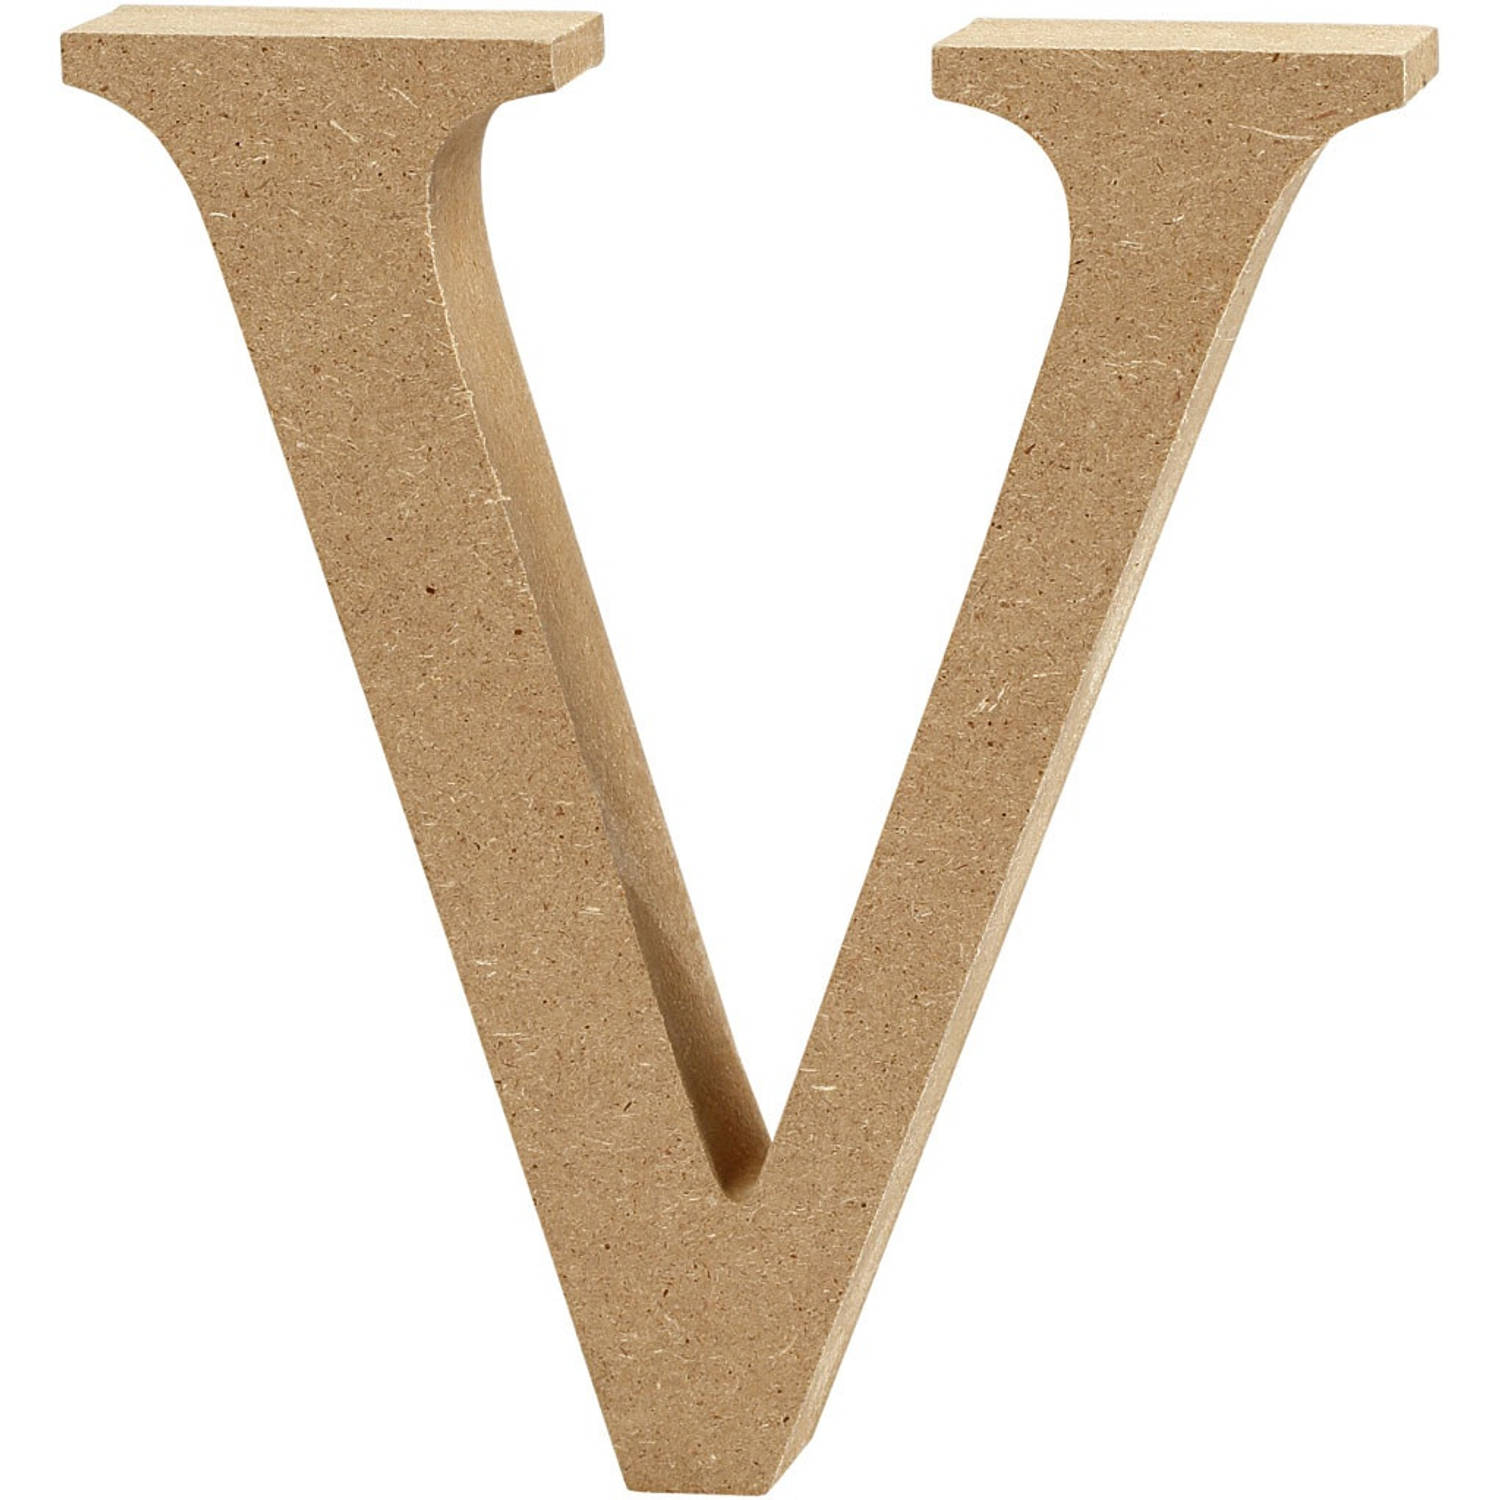 Creotime houten letter V 8 cm